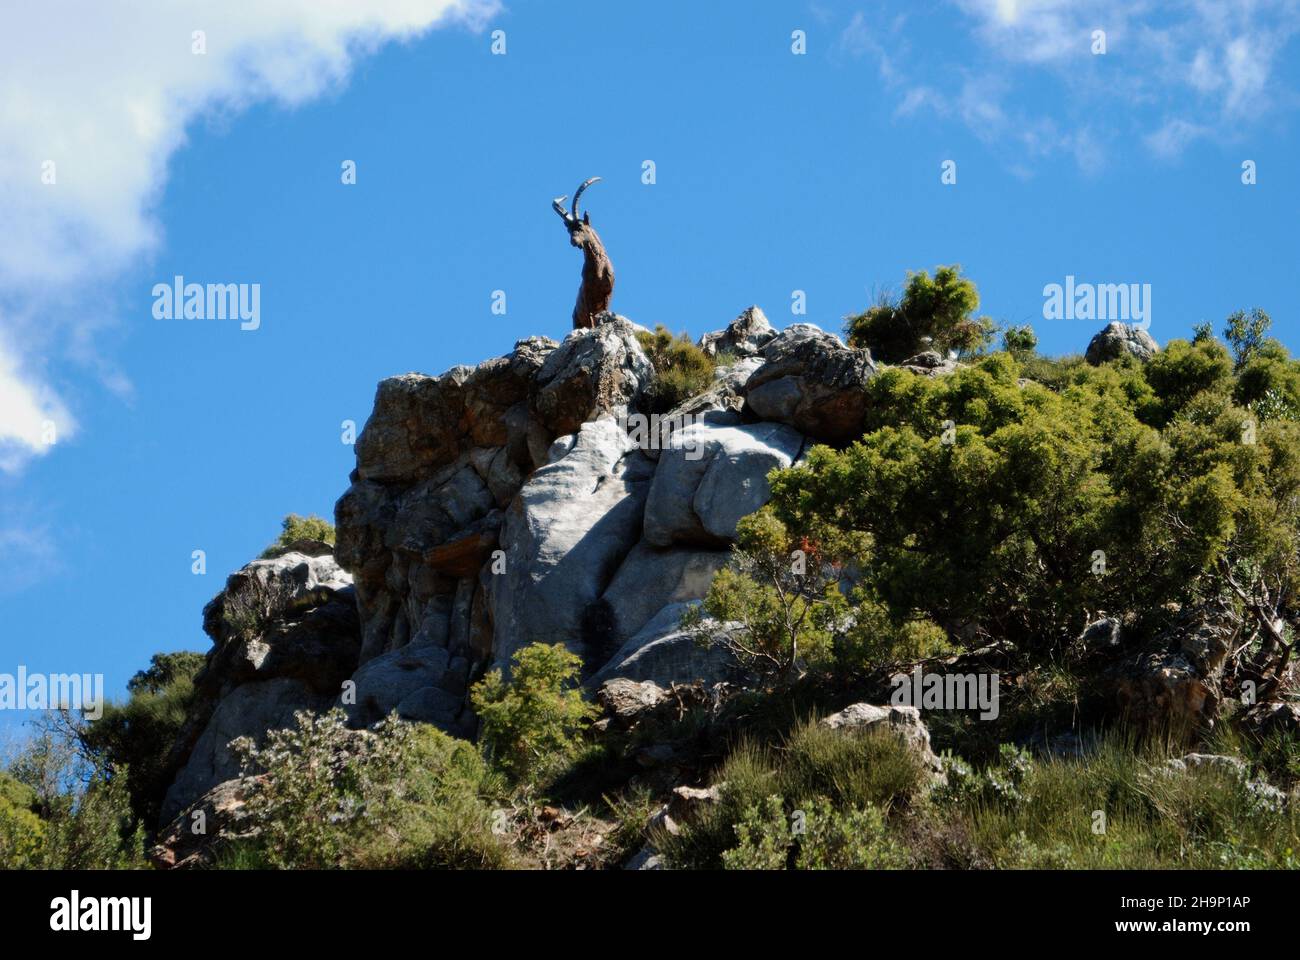 Statua di capra sulla cima di una montagna, Refugio de Juanar, vicino Marbella, Costa del Sol, Provincia di Malaga, Andalucia, Spagna, Europa occidentale. Foto Stock